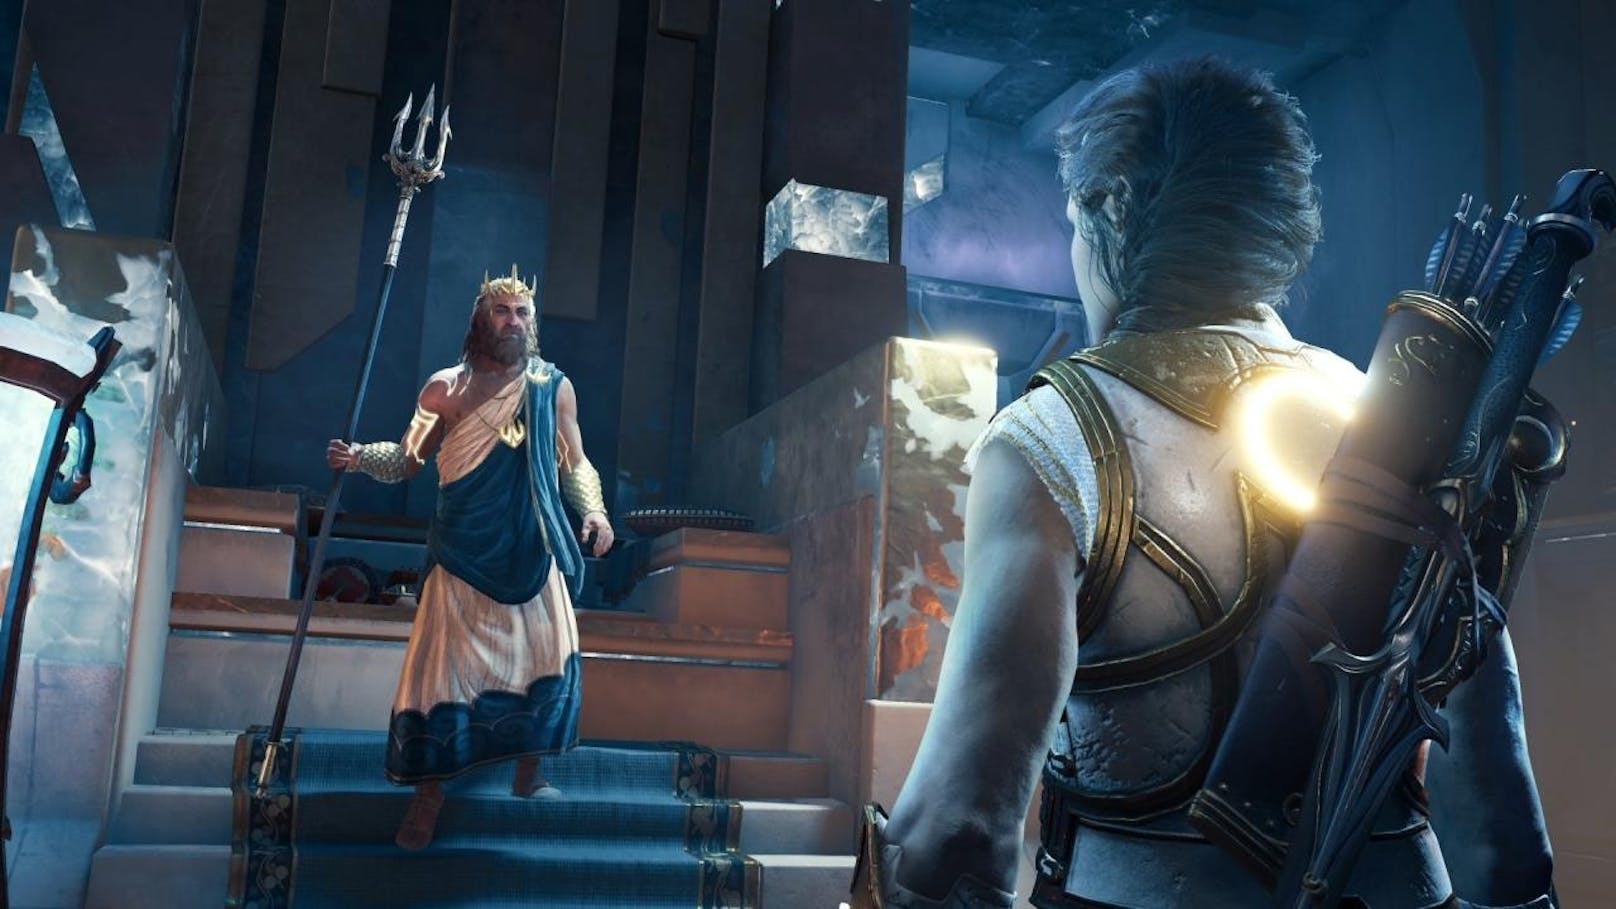 Ubisoft gab bekannt, dass "Das Urteil von Atlantis", die dritte und letzte Episode des zweiten Post-Launch-Handlungsstrangs von "Assassin's Creed Odyssey - Das Schicksal von Atlantis" ab sofort für PlayStation 4, Xbox One und Windows PC verfügbar ist. Diese letzte Episode schließt den Handlungsbogen ab, der mit "Das Vermächtnis der ersten Klinge" begann. Im Juli erwarten die Spieler außerdem neue Gegenstände, ein Titel-Update und neue Geschichten mit dem Story-Modus. Erste Einblicke zur finalen Episode sind auf UbisoftTV bereits verfügbar. <a href="https://www.youtube.com/watch?v=s5s8-NqITYE">Ein Trailer zur Episode kann hier angesehen werden.</a>